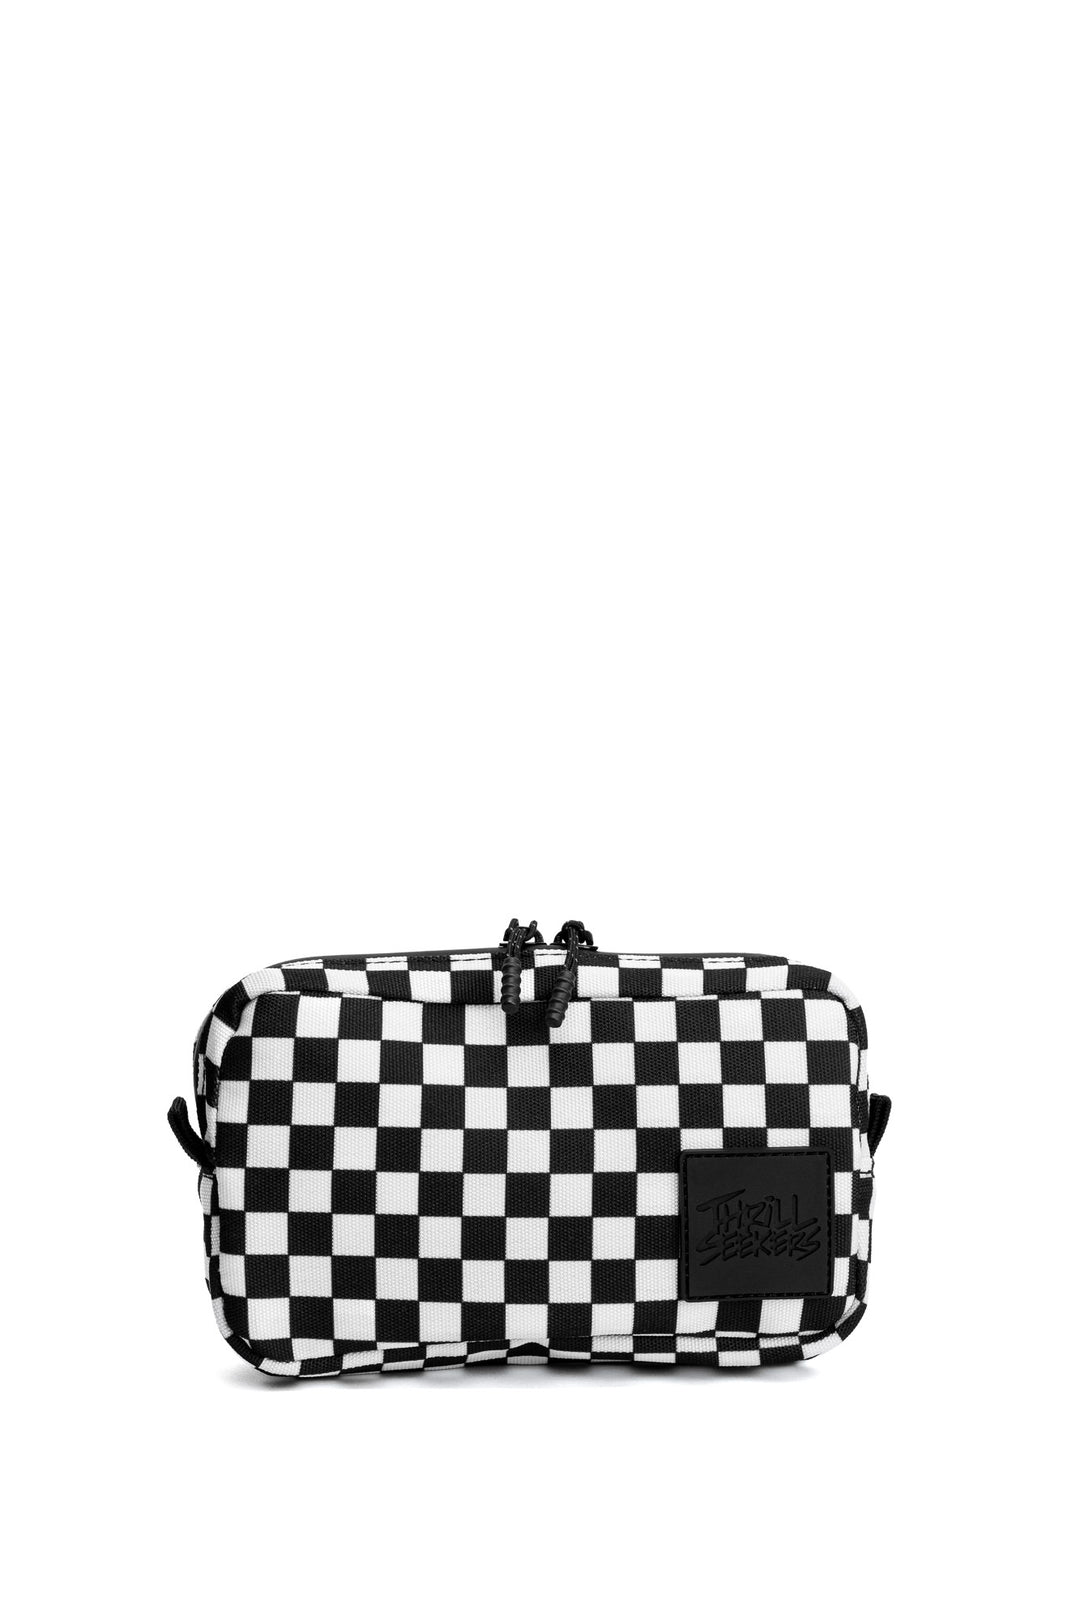 Michael Kors Checkered Pattern Tote Bag - Black Totes, Handbags - MIC203955  | The RealReal